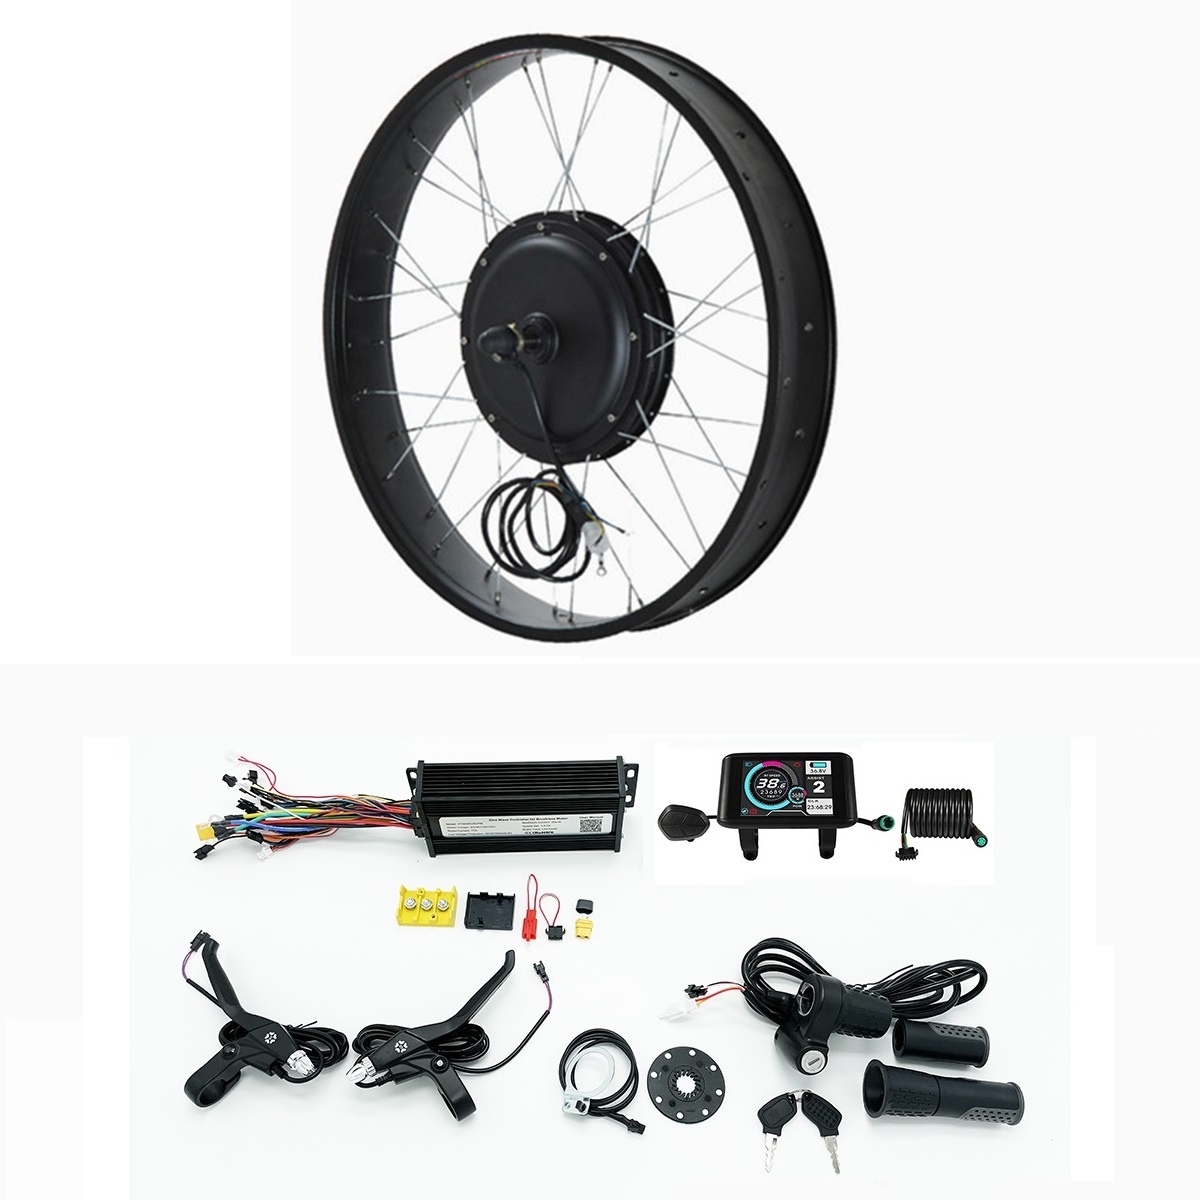  Kit de bicicleta eléctrica Fat 60V/72V 2000W neumático eléctrico  de nieve para bicicleta de nieve Kit de motor con controlador de onda  sinusoidal Sabvoton, pantalla a color TFT UCK1, volante de